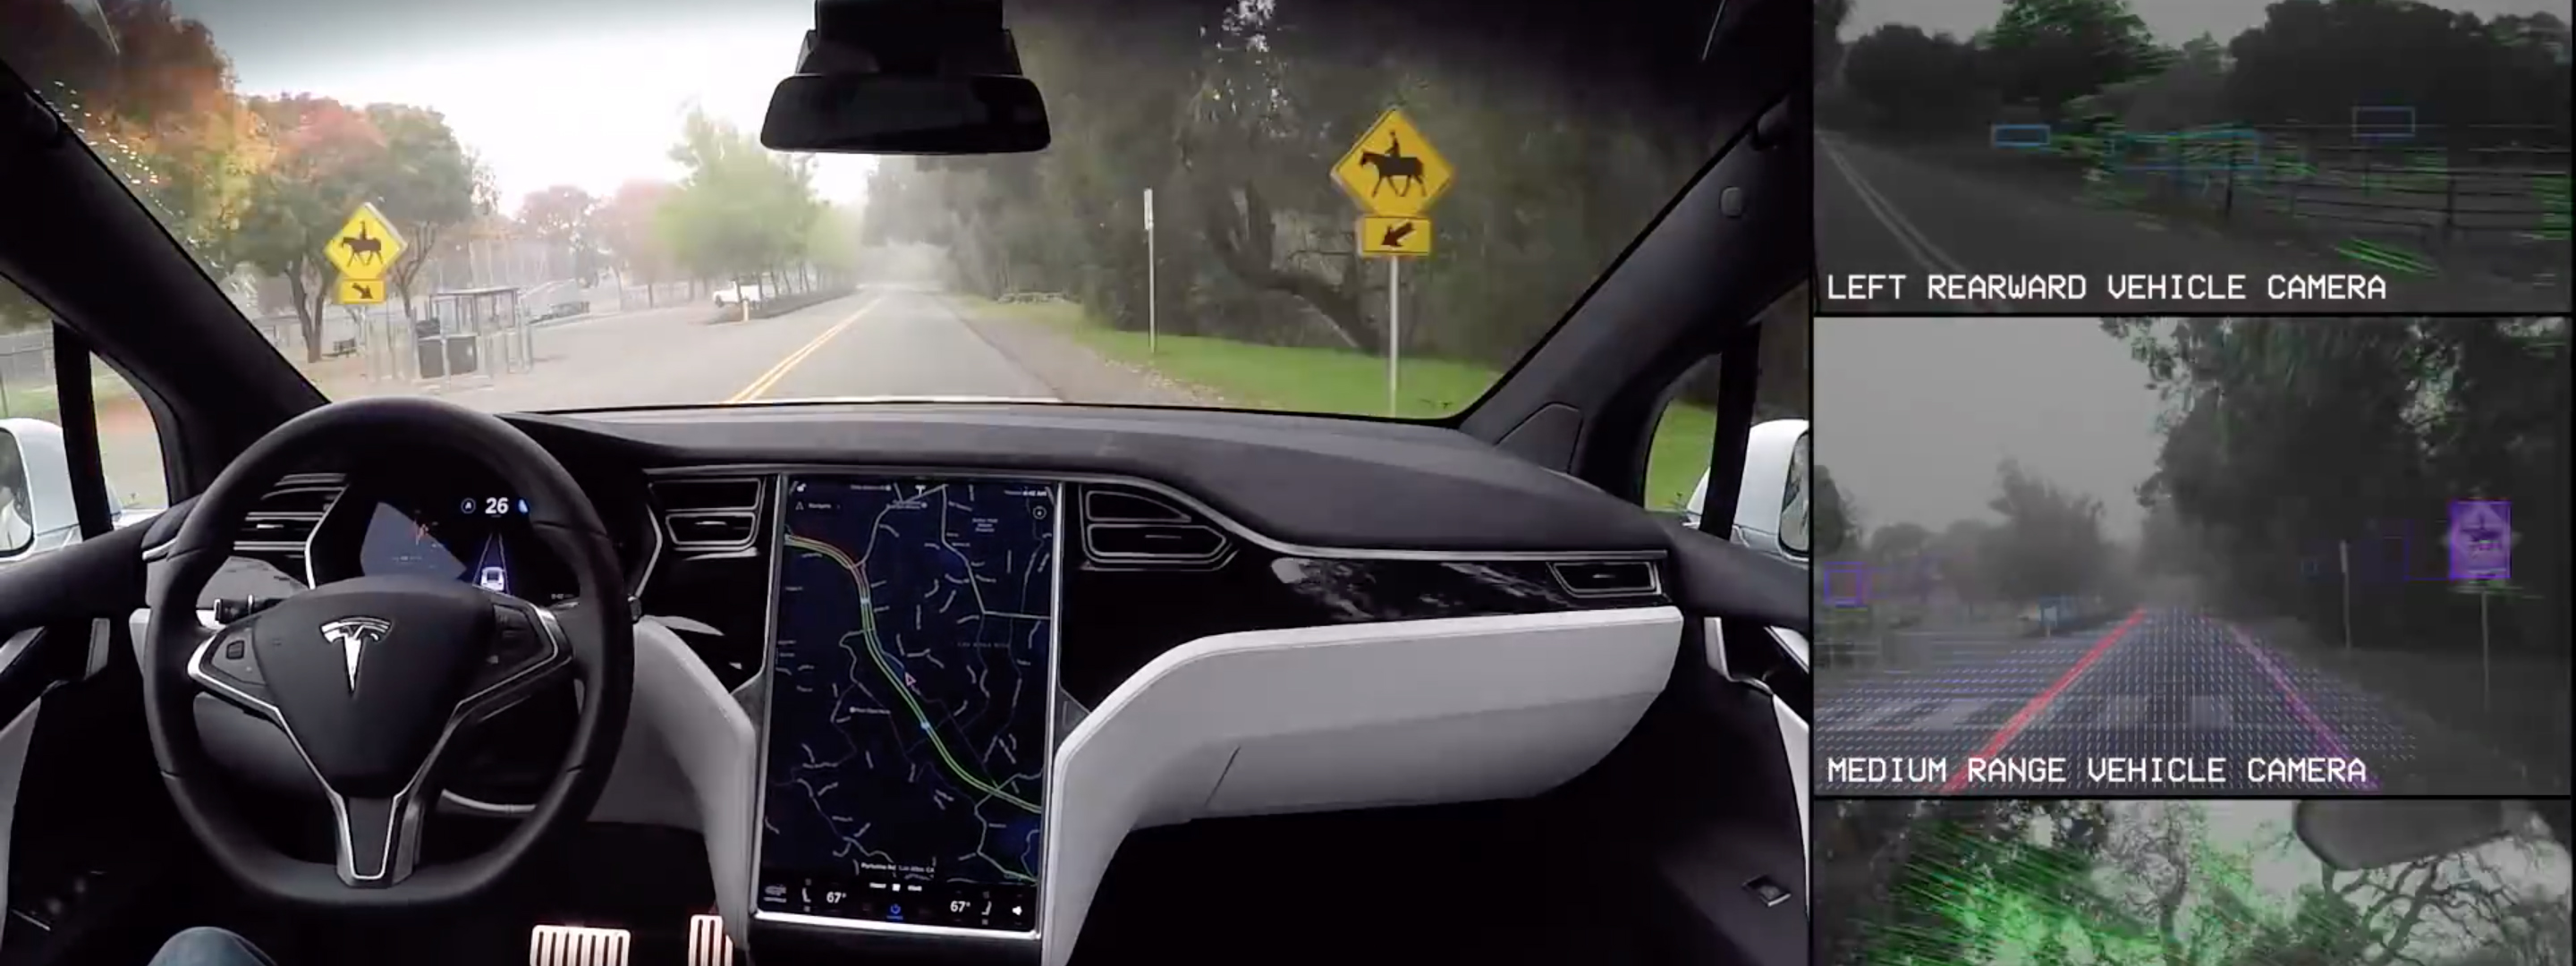 [Video] Hệ thống camera trên xe Tesla nhìn thấy những gì khi ở chế độ tự lái